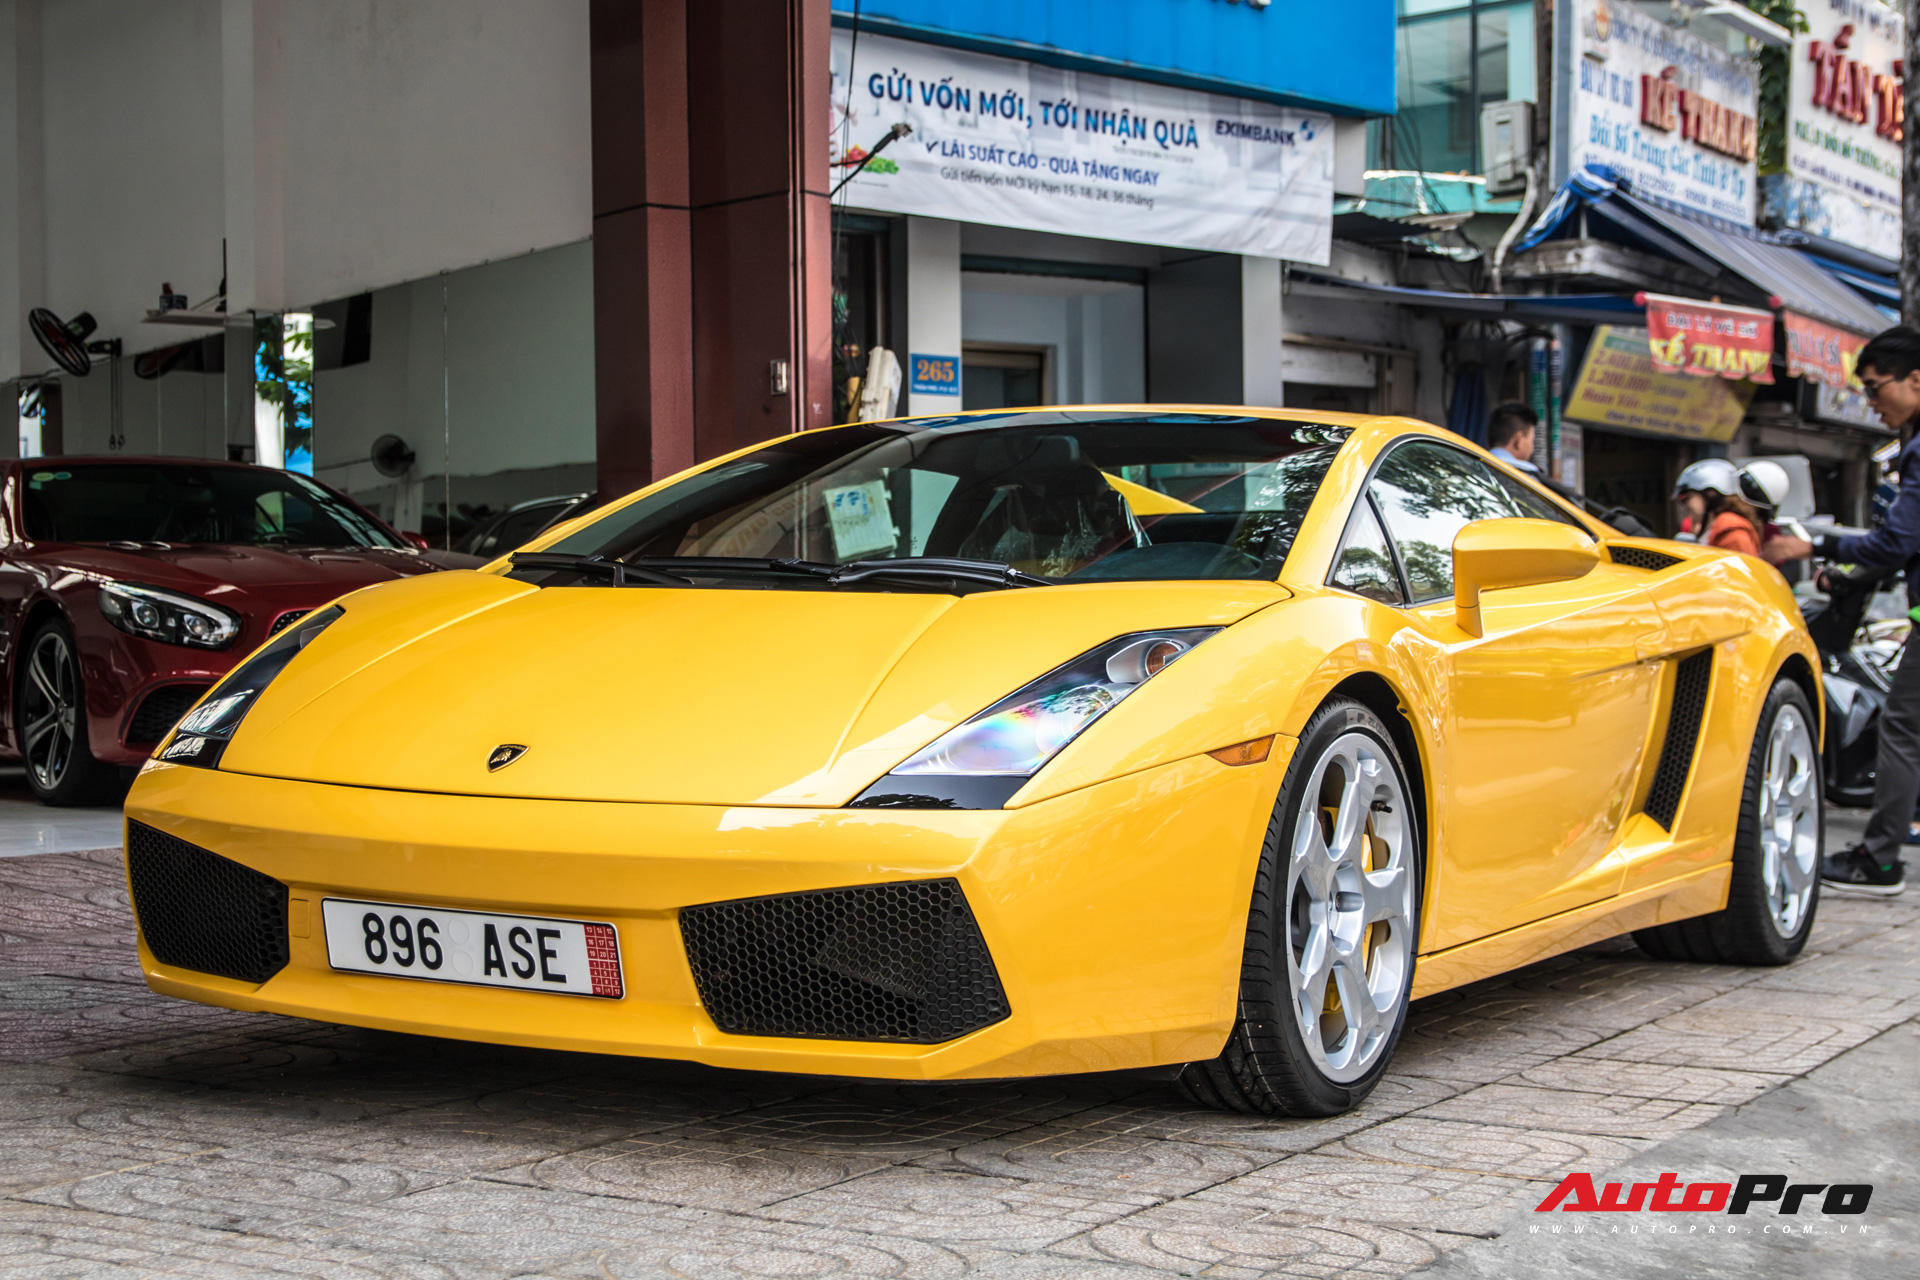 Lamborghini Gallardo từng gắn liền với tên tuổi Cường 'Đô-la' bất ngờ tái xuất trên phố Sài Gòn